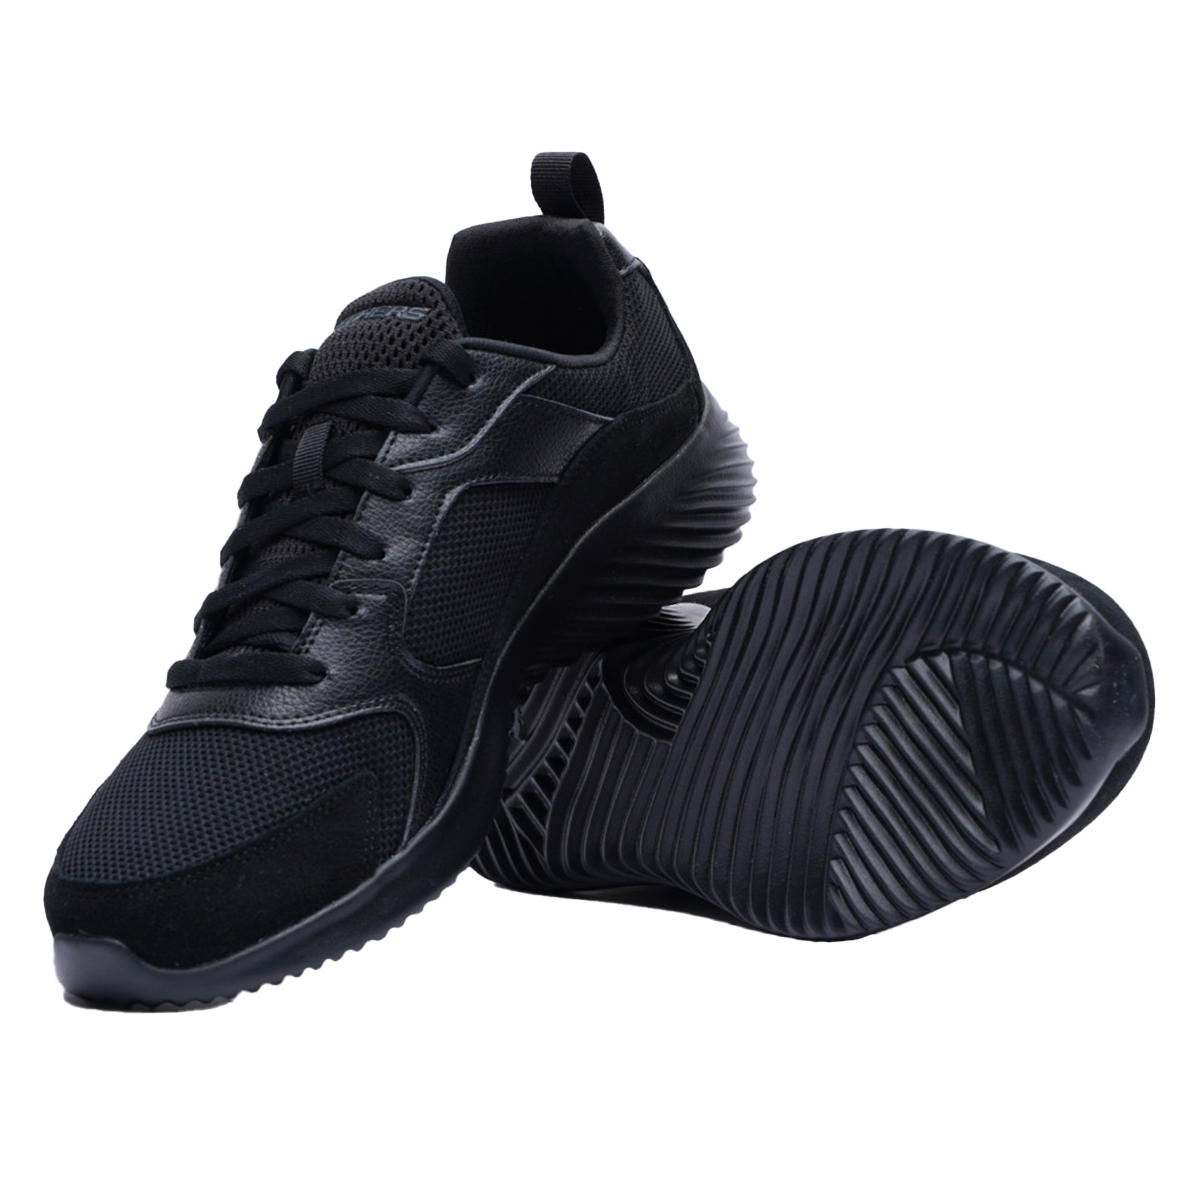 Skechers Running Bounder Shoes For Men, Black